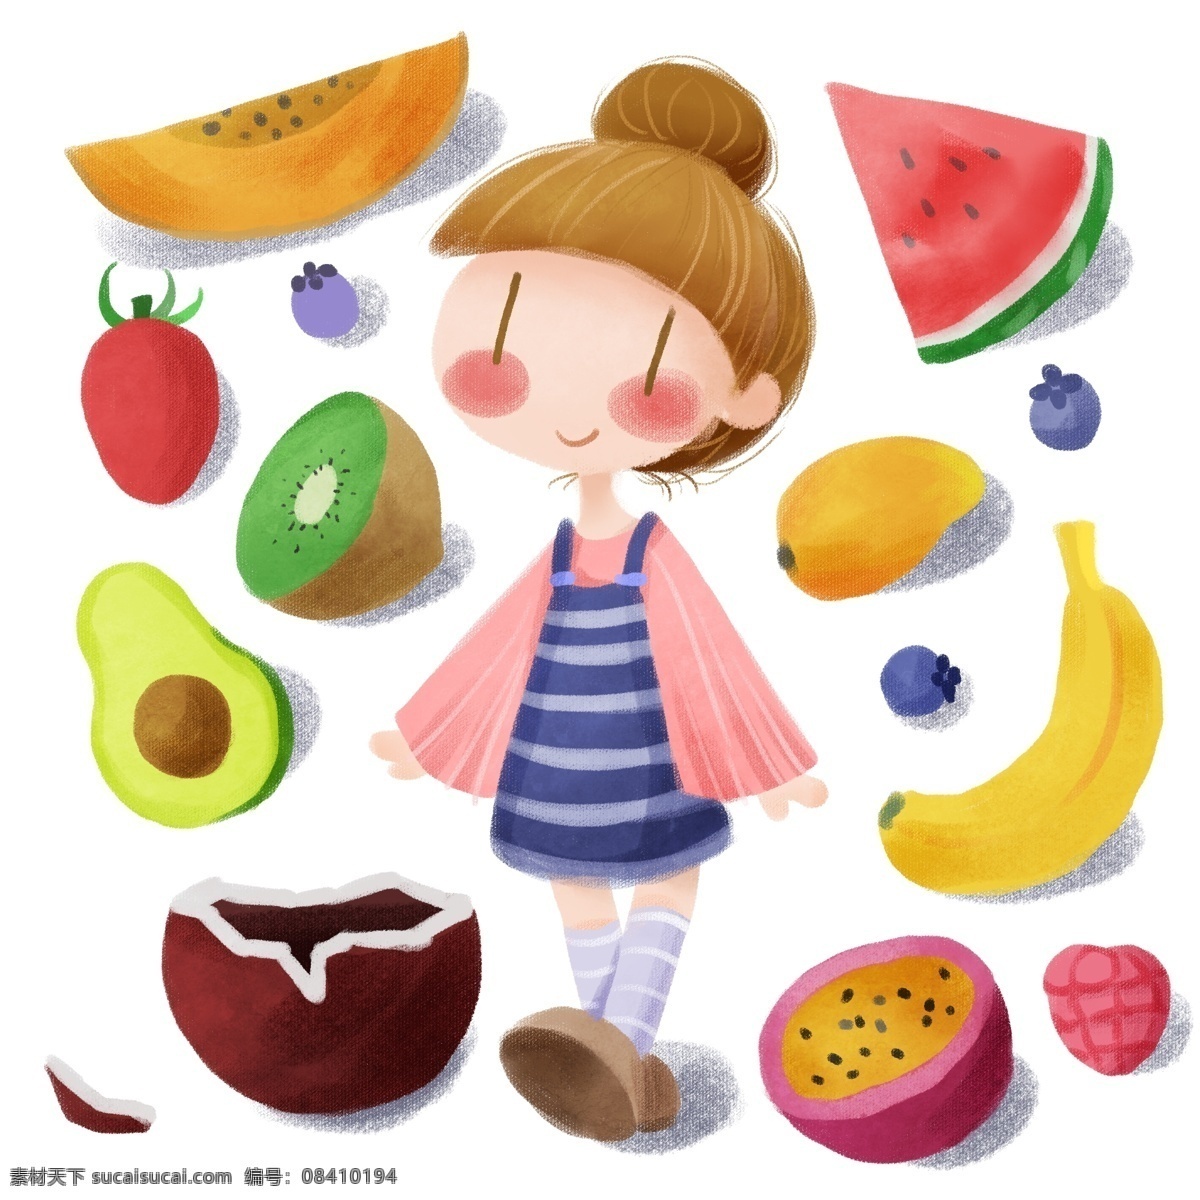 手绘 小女孩 水果 派对 健康生活 健康 生活 西瓜 木瓜 椰子 夏天 夏 香蕉 芒果 牛油果 圣女果 蓝莓 树莓 维生素